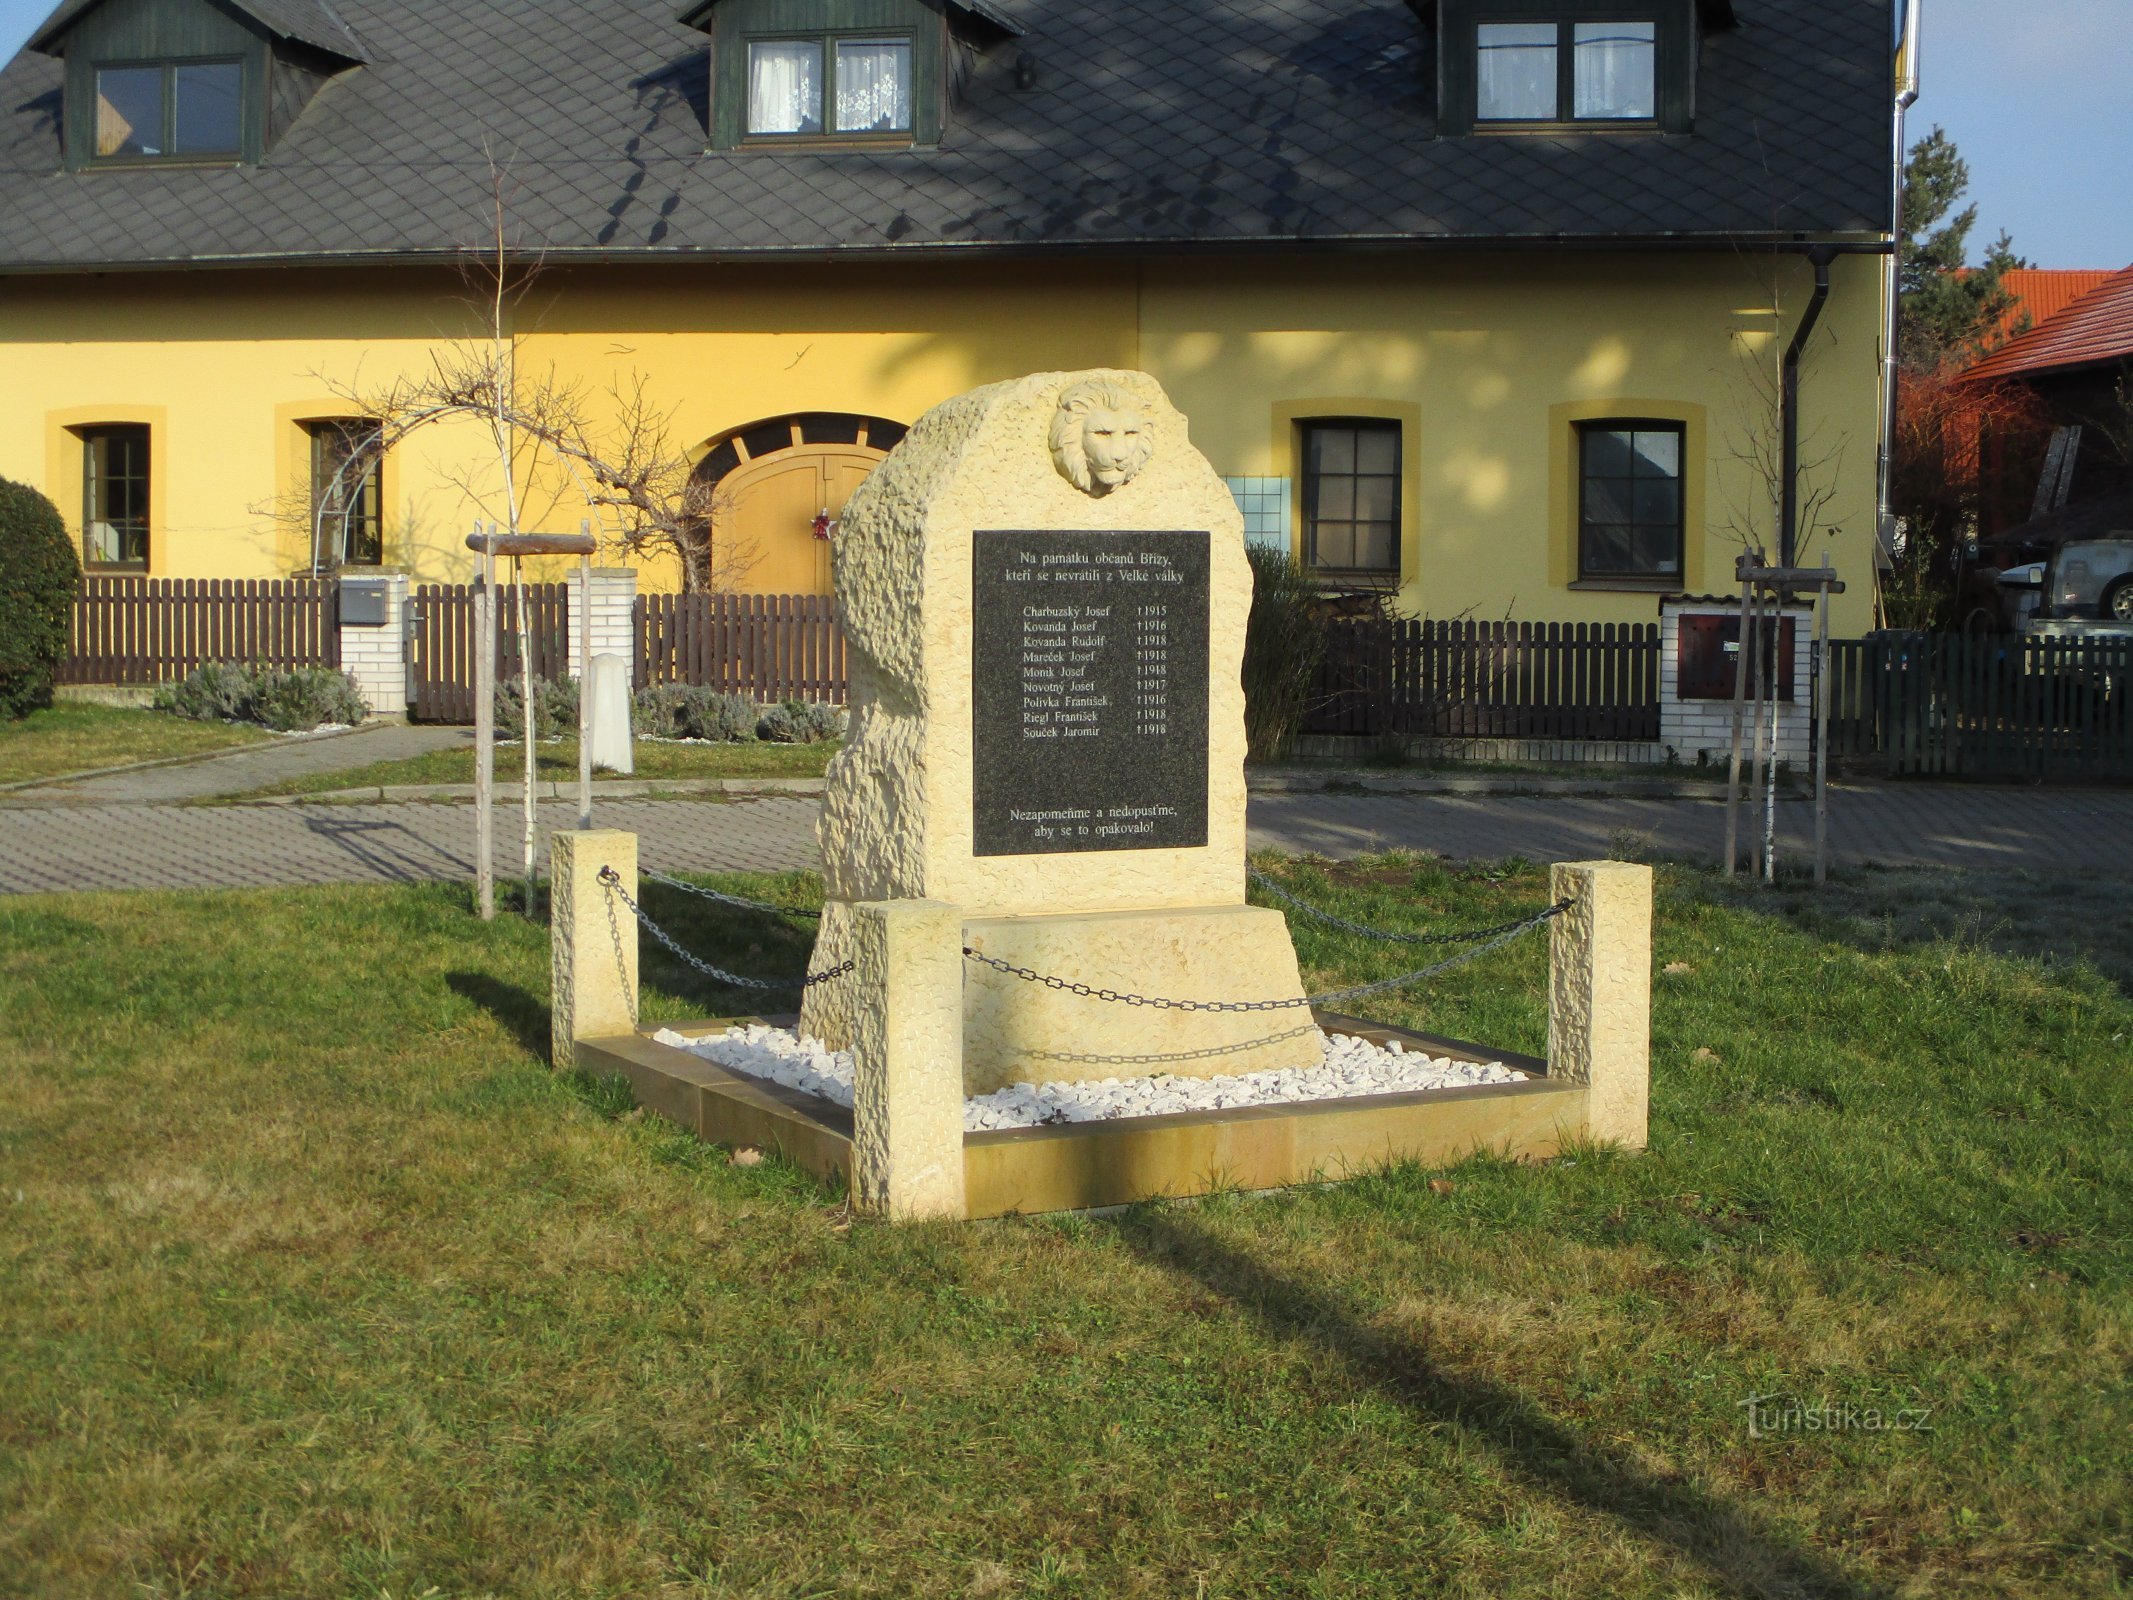 Đài tưởng niệm những người đã chết trong Chiến tranh thế giới thứ nhất (Birch)